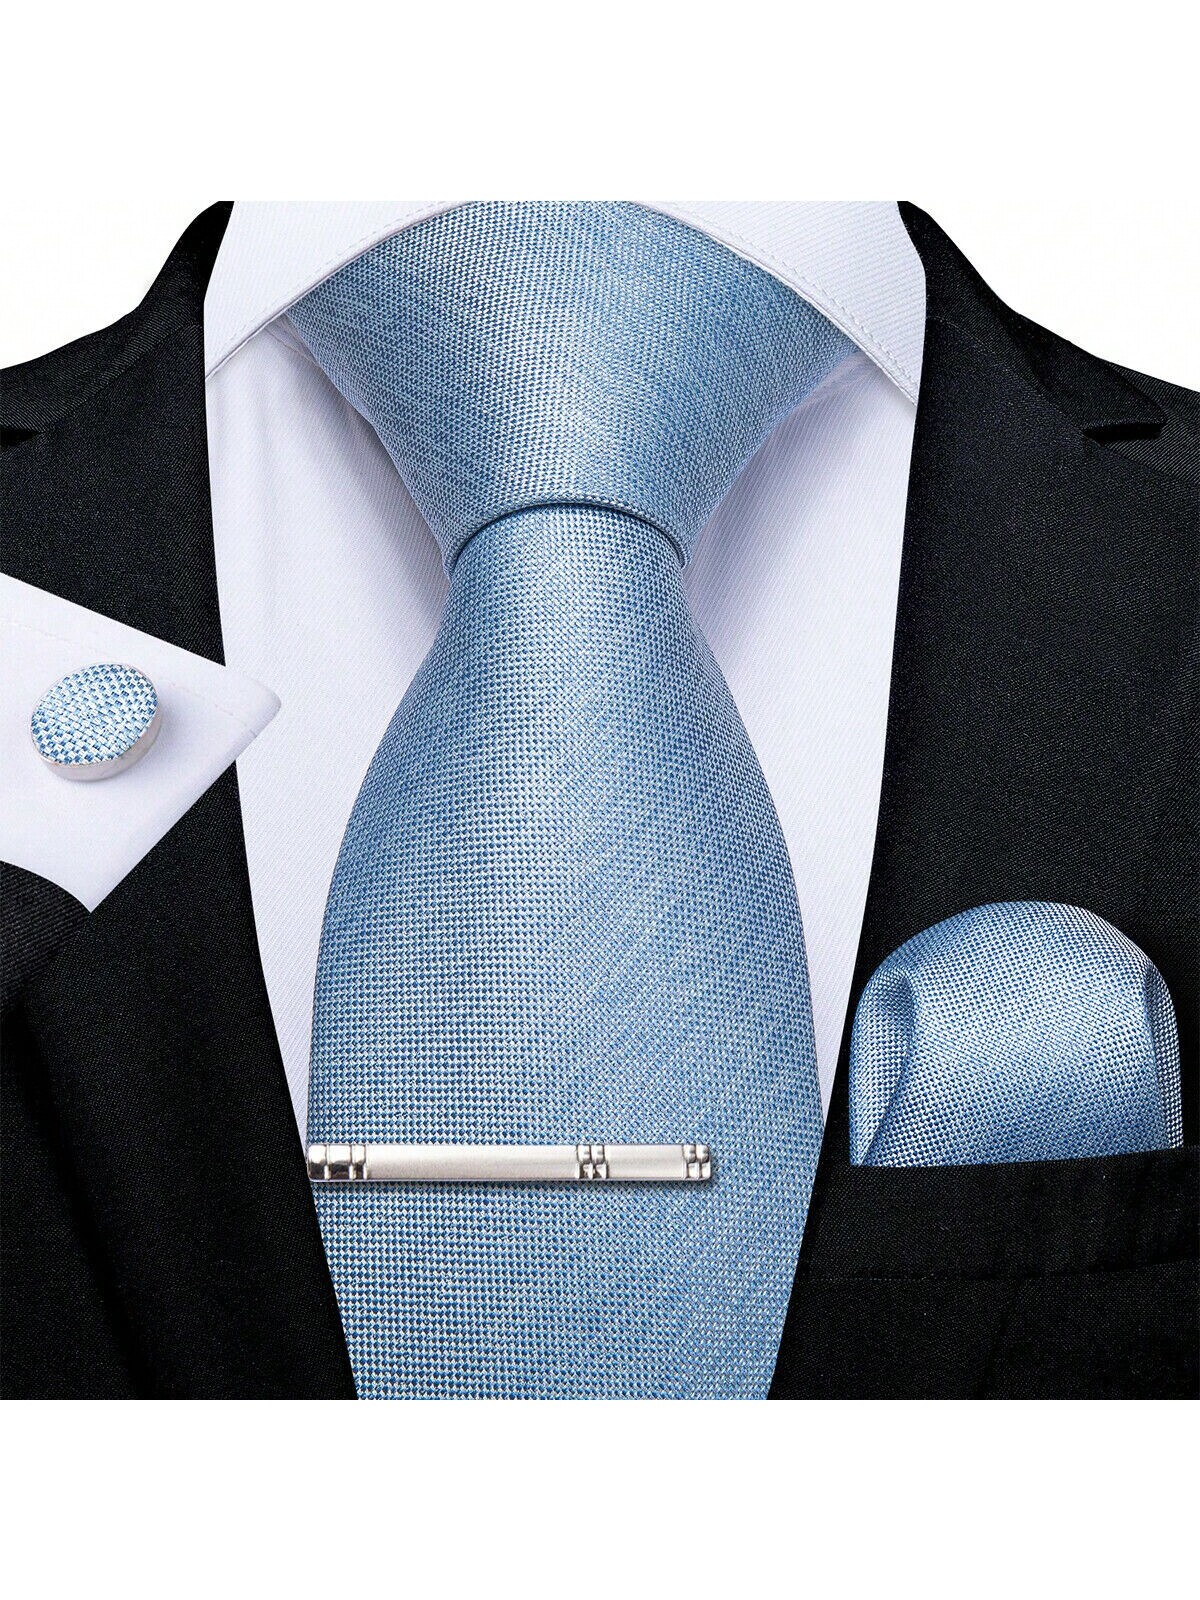 DiBanGu мужской галстук шелковый однотонный свадебный синий галстук карманные квадратные запонки клип набор Рождество 4 шт., голубые галстук ecoved синий